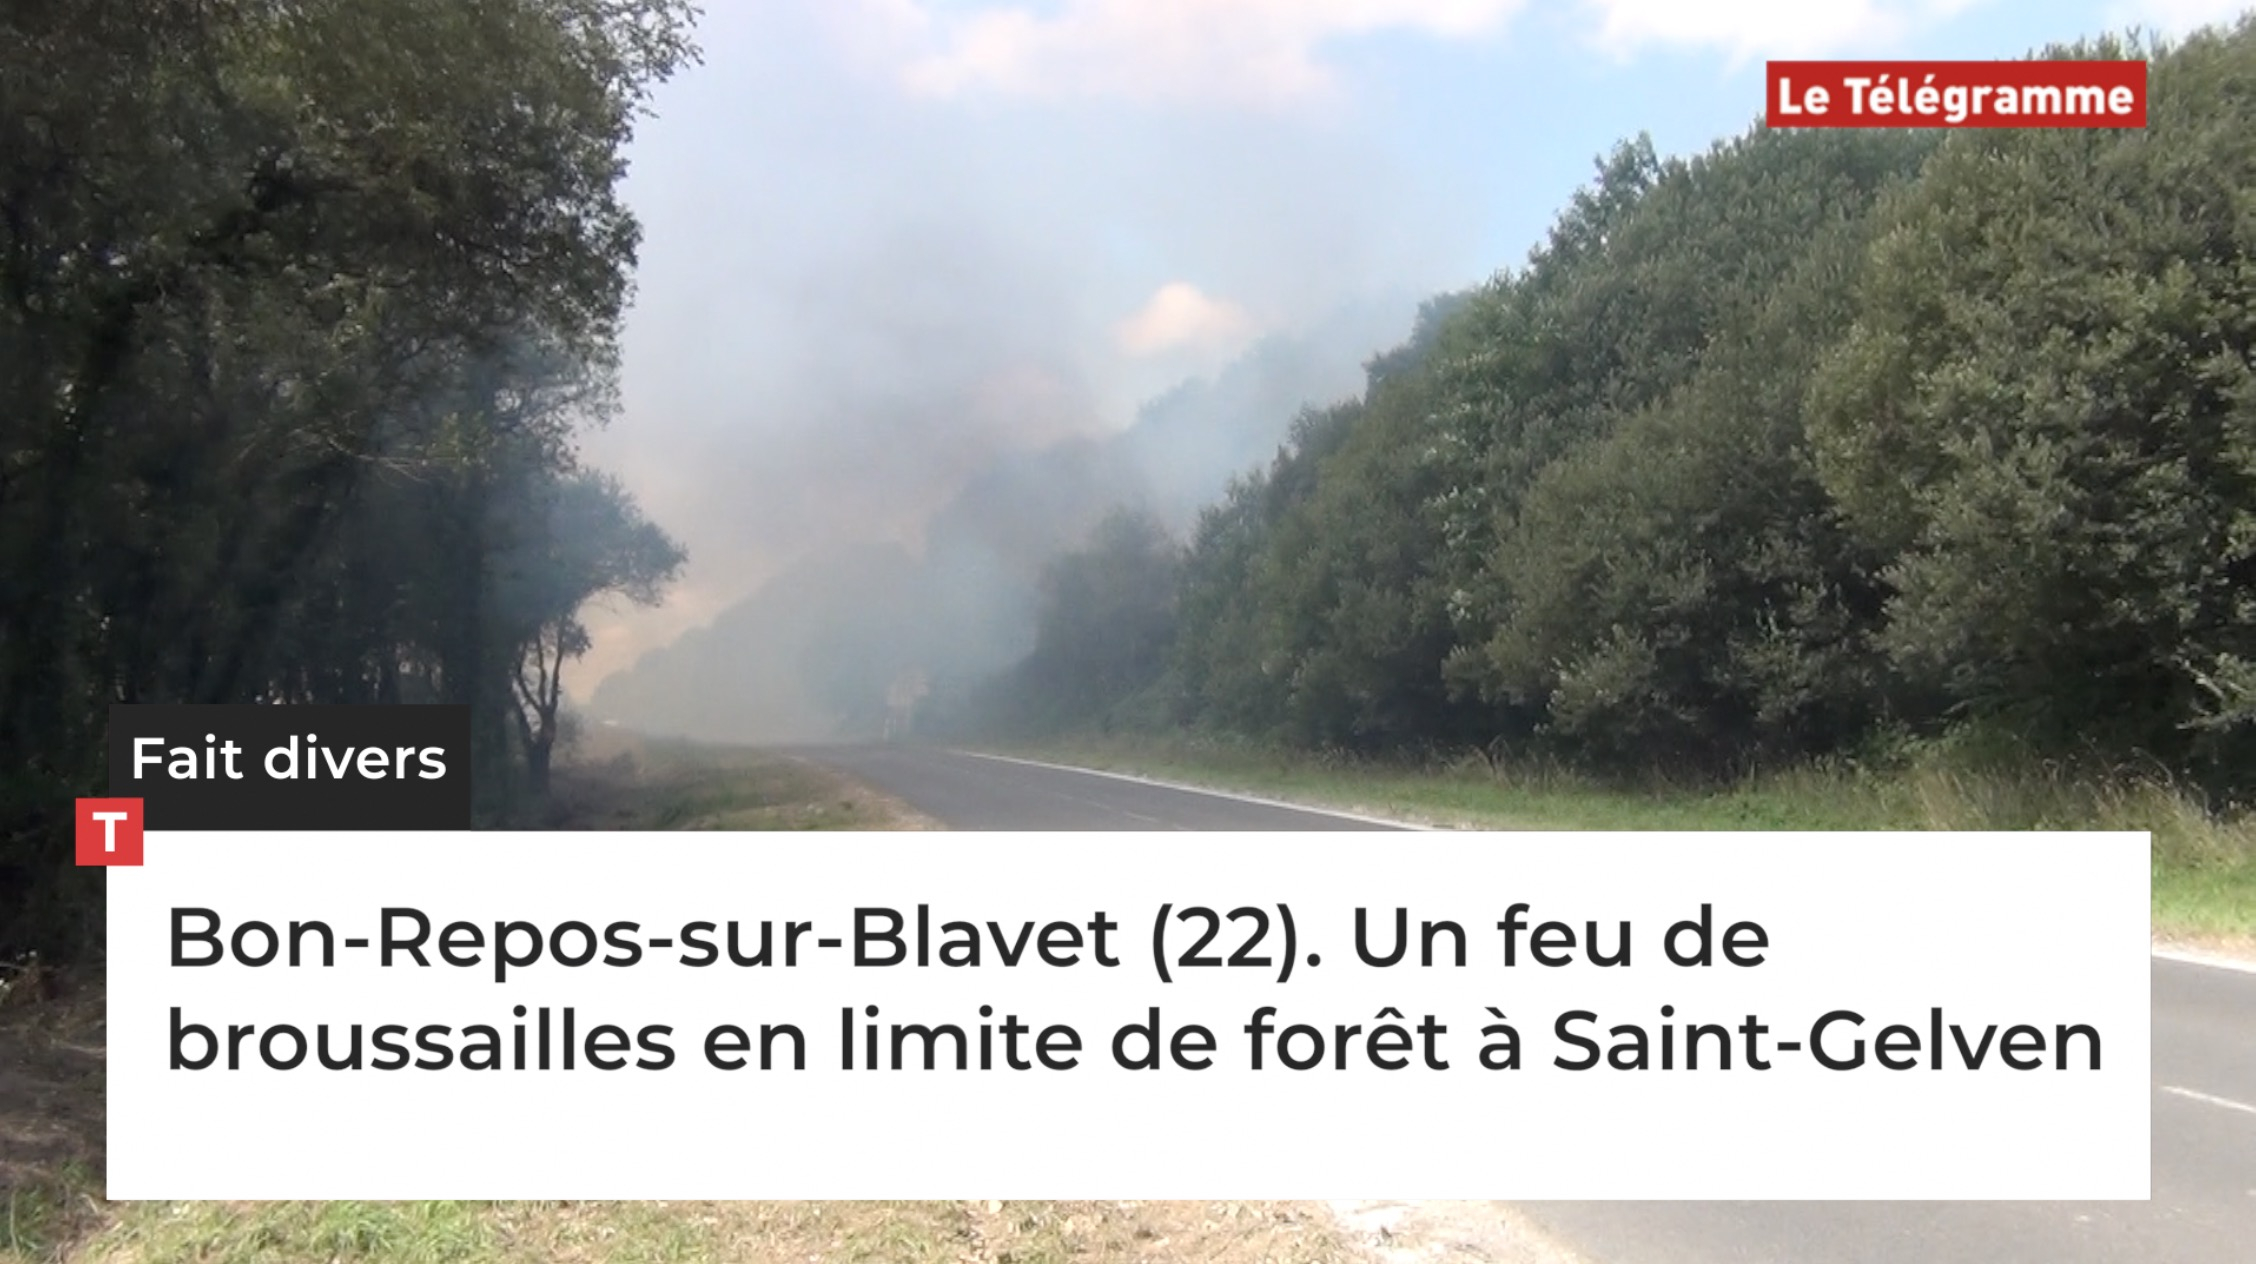 Bon-Repos-sur-Blavet (22). Un feu de broussailles en limite de forêt à Saint-Gelven (Le Télégramme)